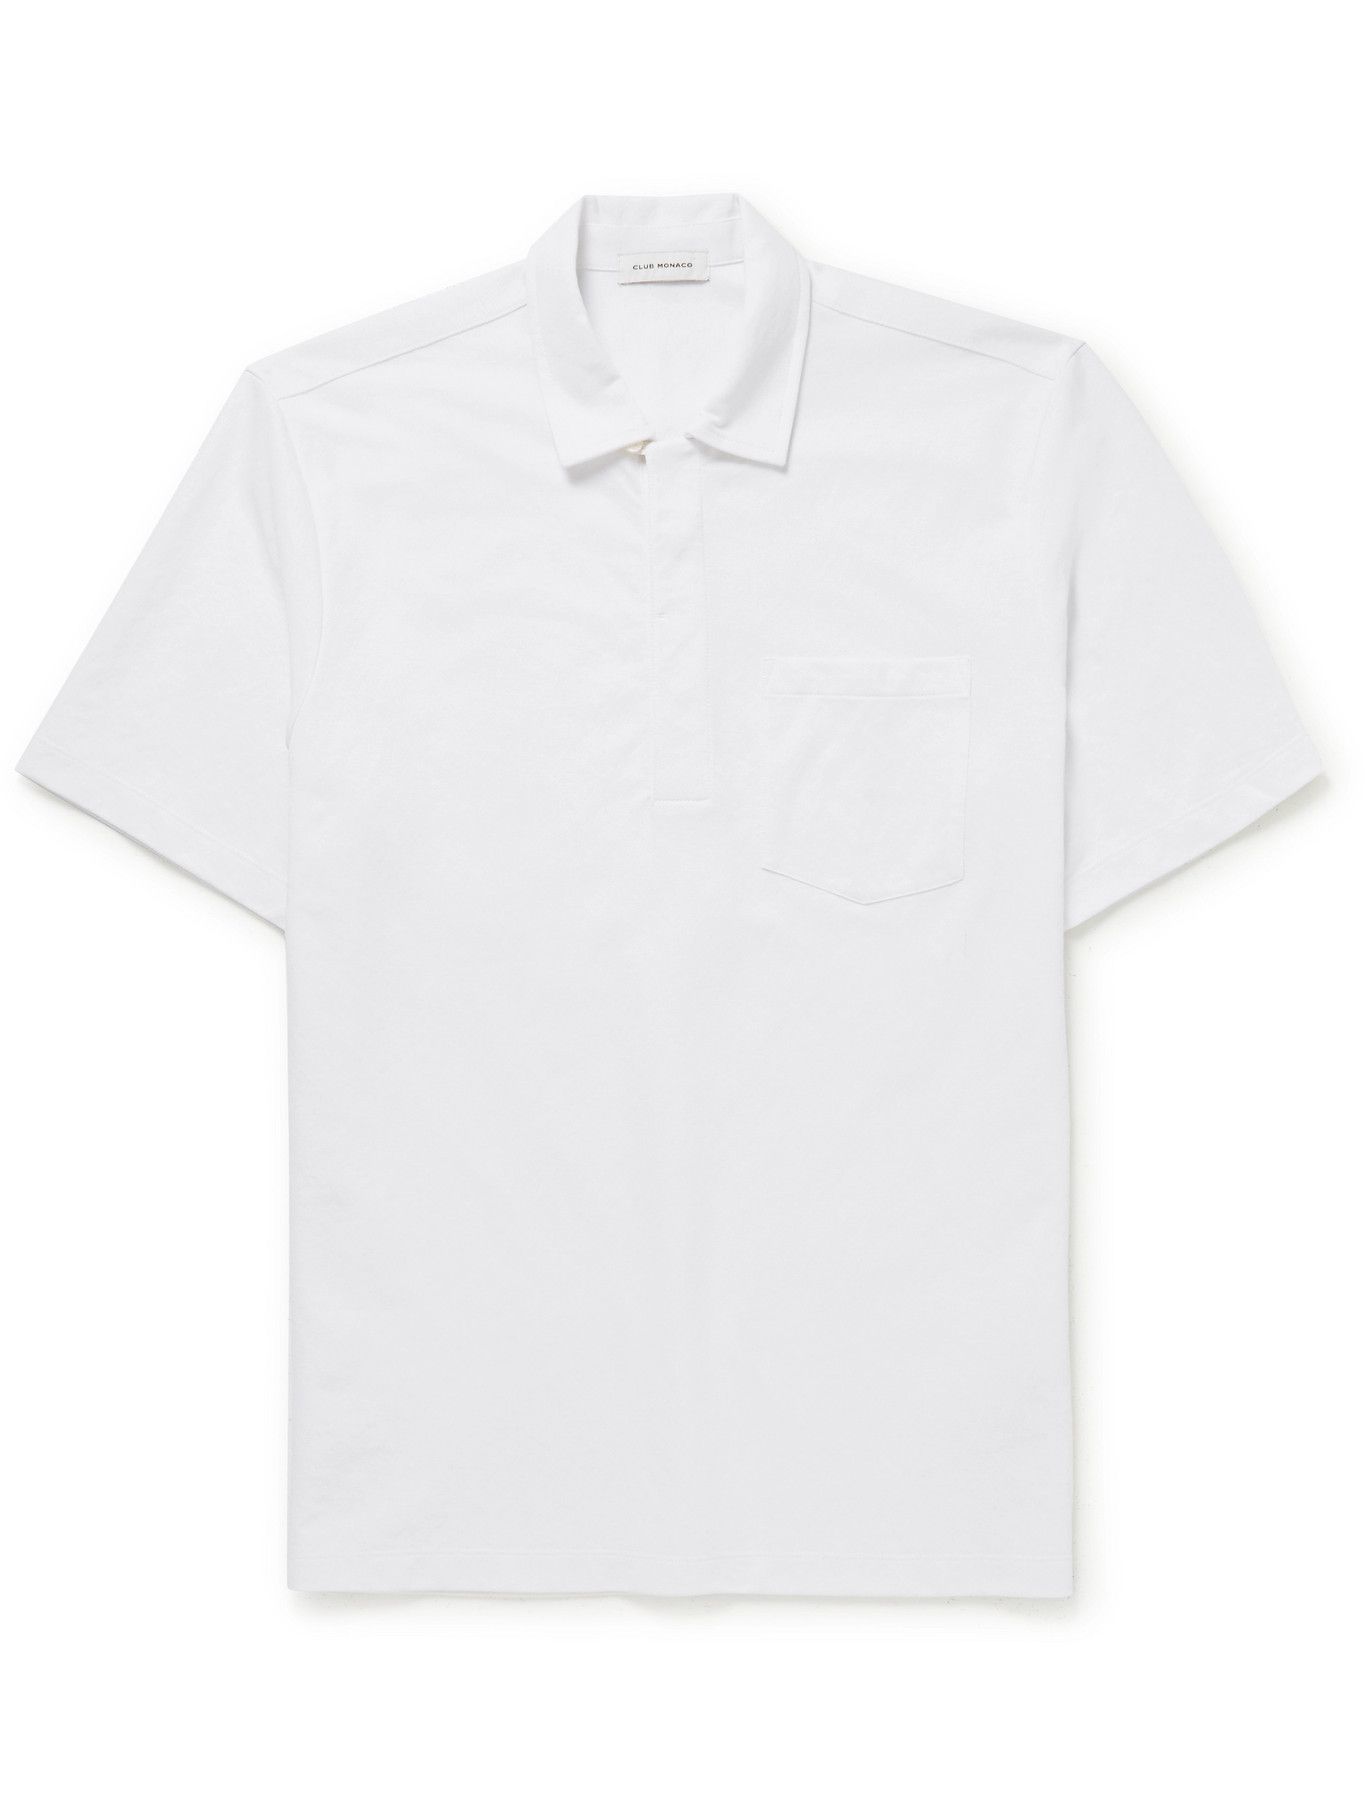 Club Monaco - Cotton-Blend Twill Polo Shirt - White Club Monaco